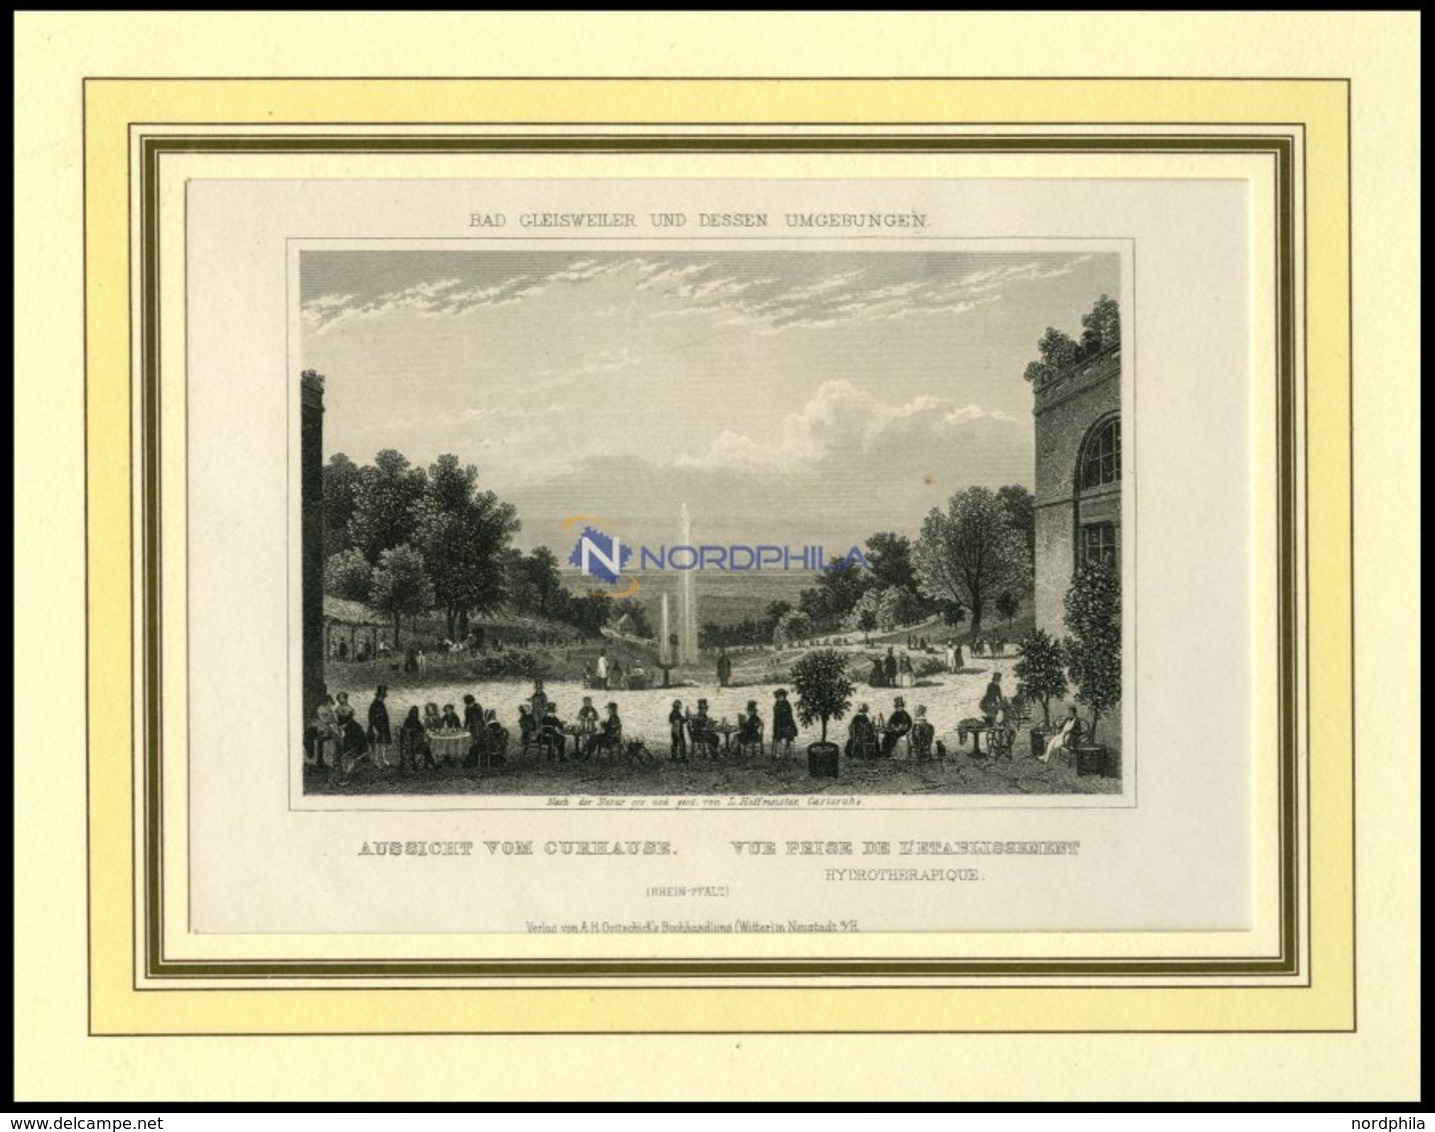 BAD GLEISWEILER, Gesamtansicht Vom Curhaus Aus Gesehen, Stahlstich Aus Romantische Rheinpfalz Um 1840 - Lithographien